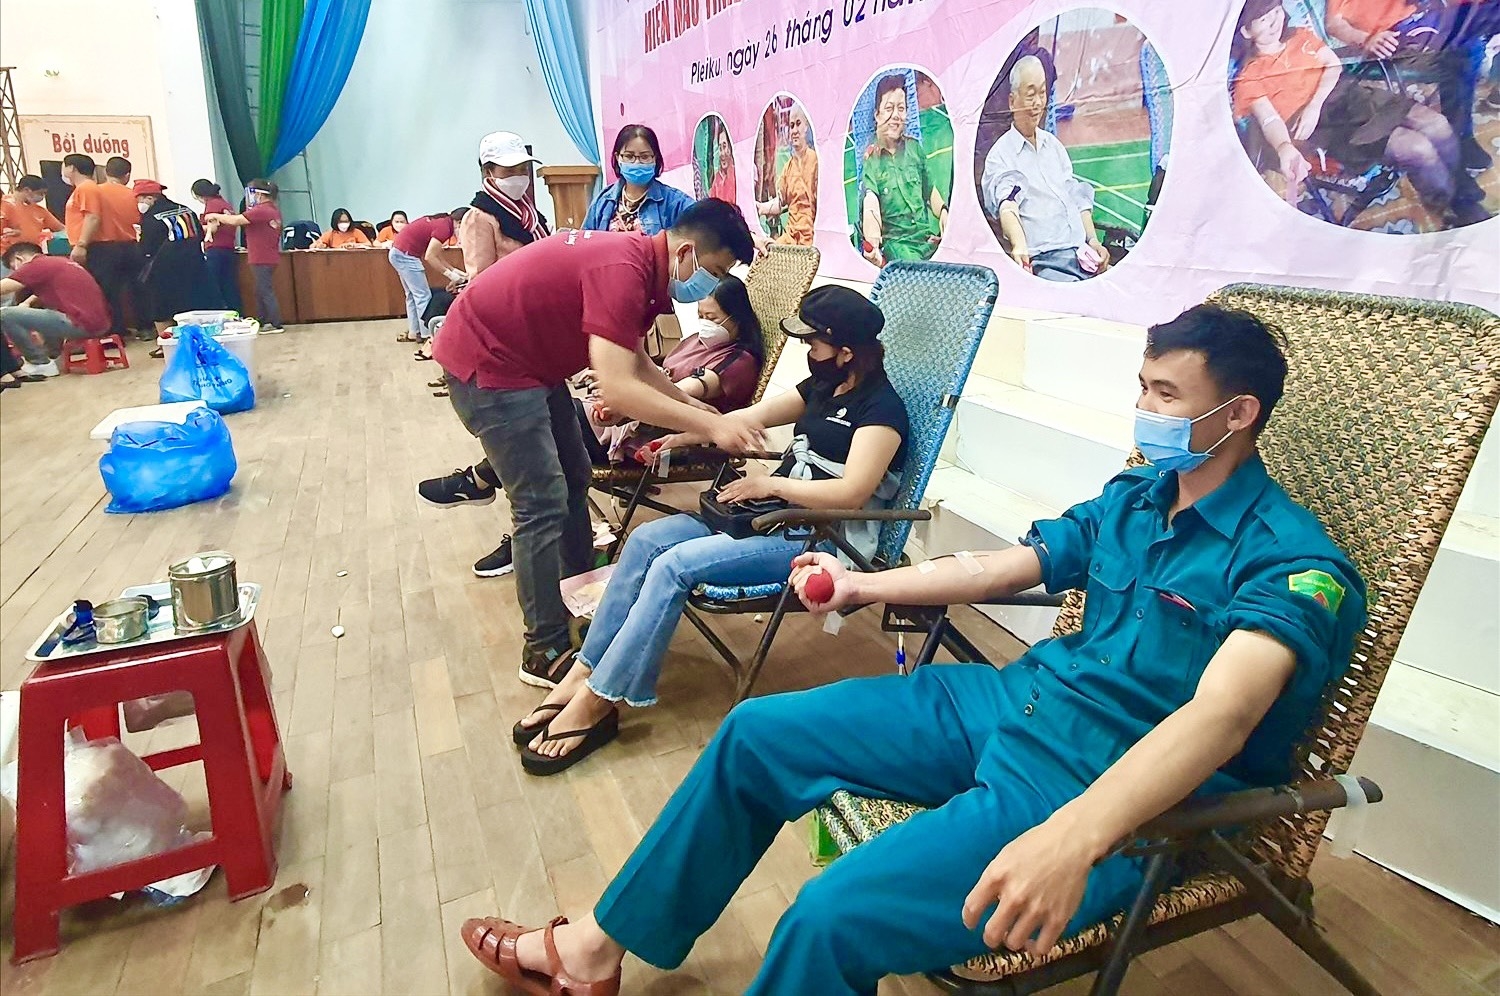 Sau lễ phát động, đông đảo các lực lượng tham gia hiến máu tình nguyện